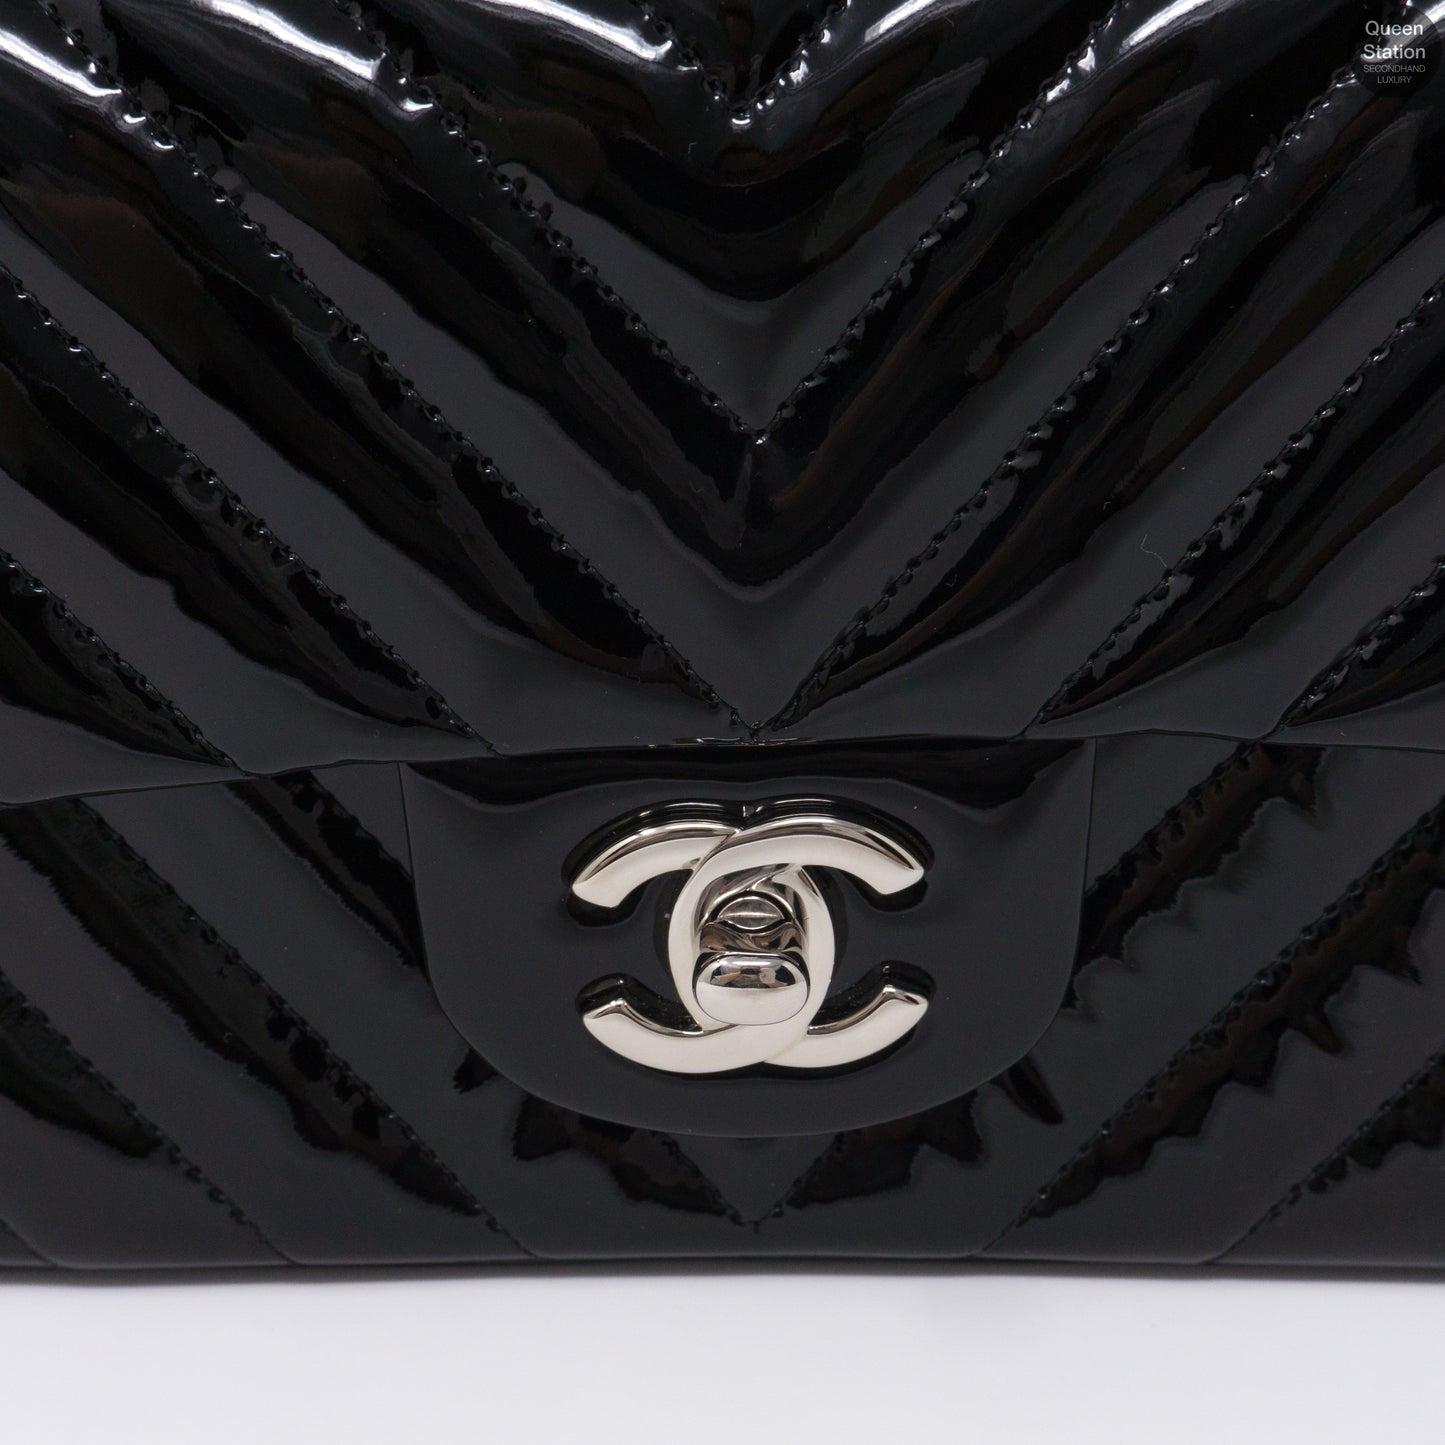 Chevron Rectangular Mini Flap Black Patent Leather Bag